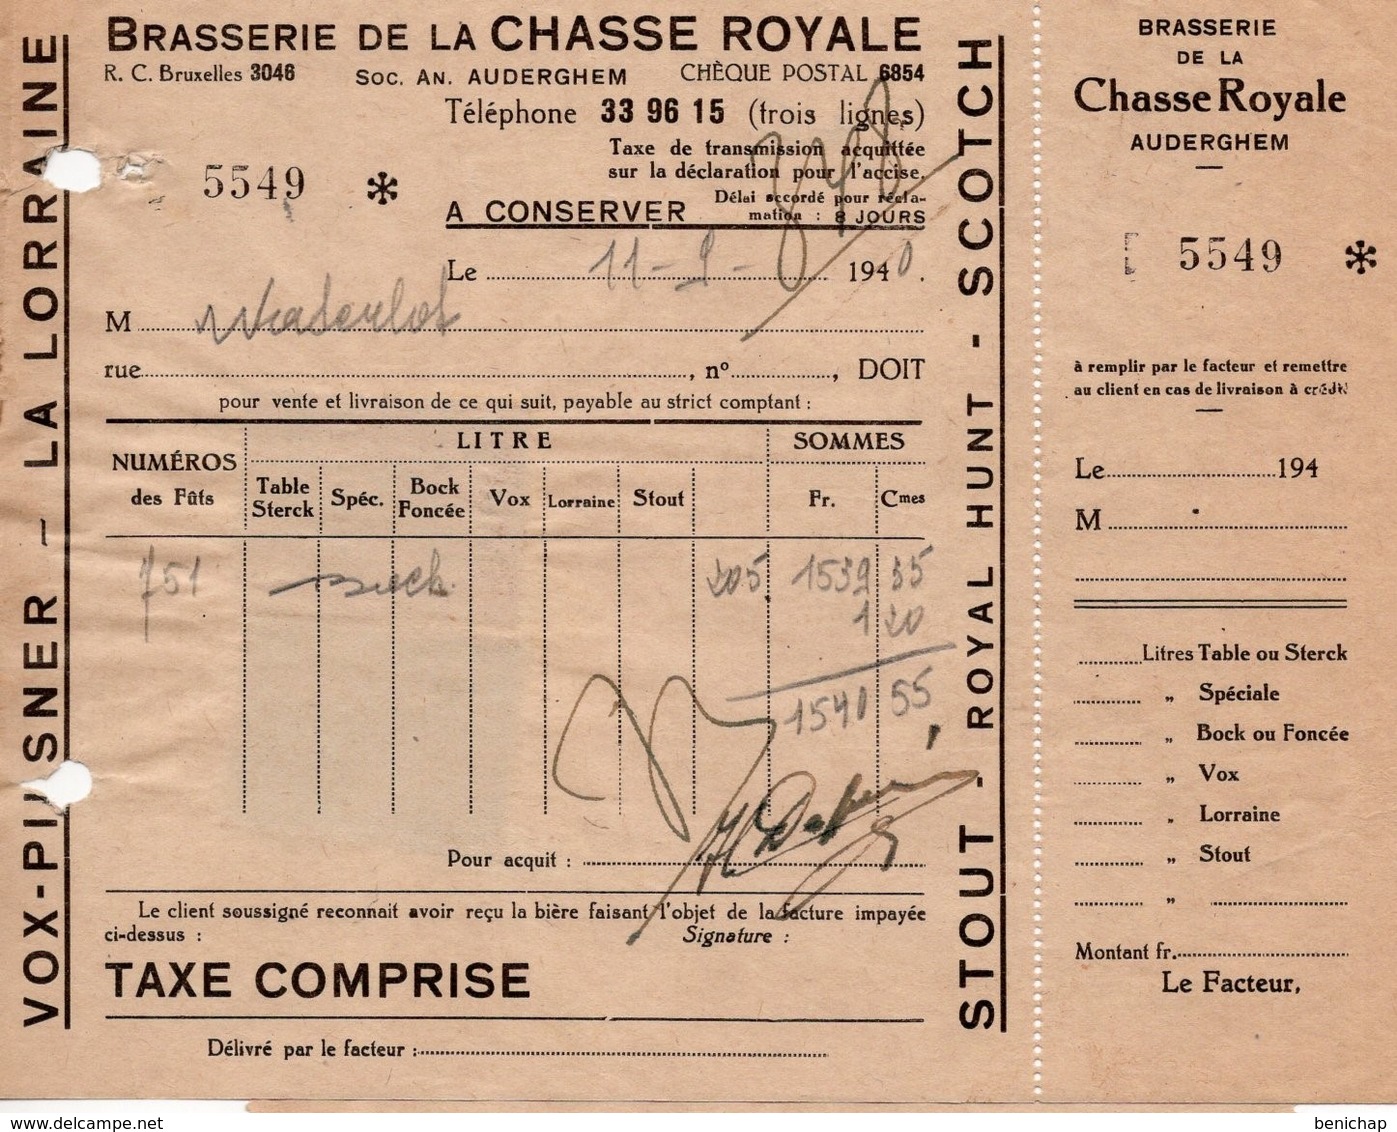 BRASSERIE DE LA CHASSE ROYALE - AUDERGHEM - VOX- PILSENER - LA LORRAINE - STOUT - ROYAL HUNT - SCOTCH -7 SEPTEMBRE 1940 - Alimentare